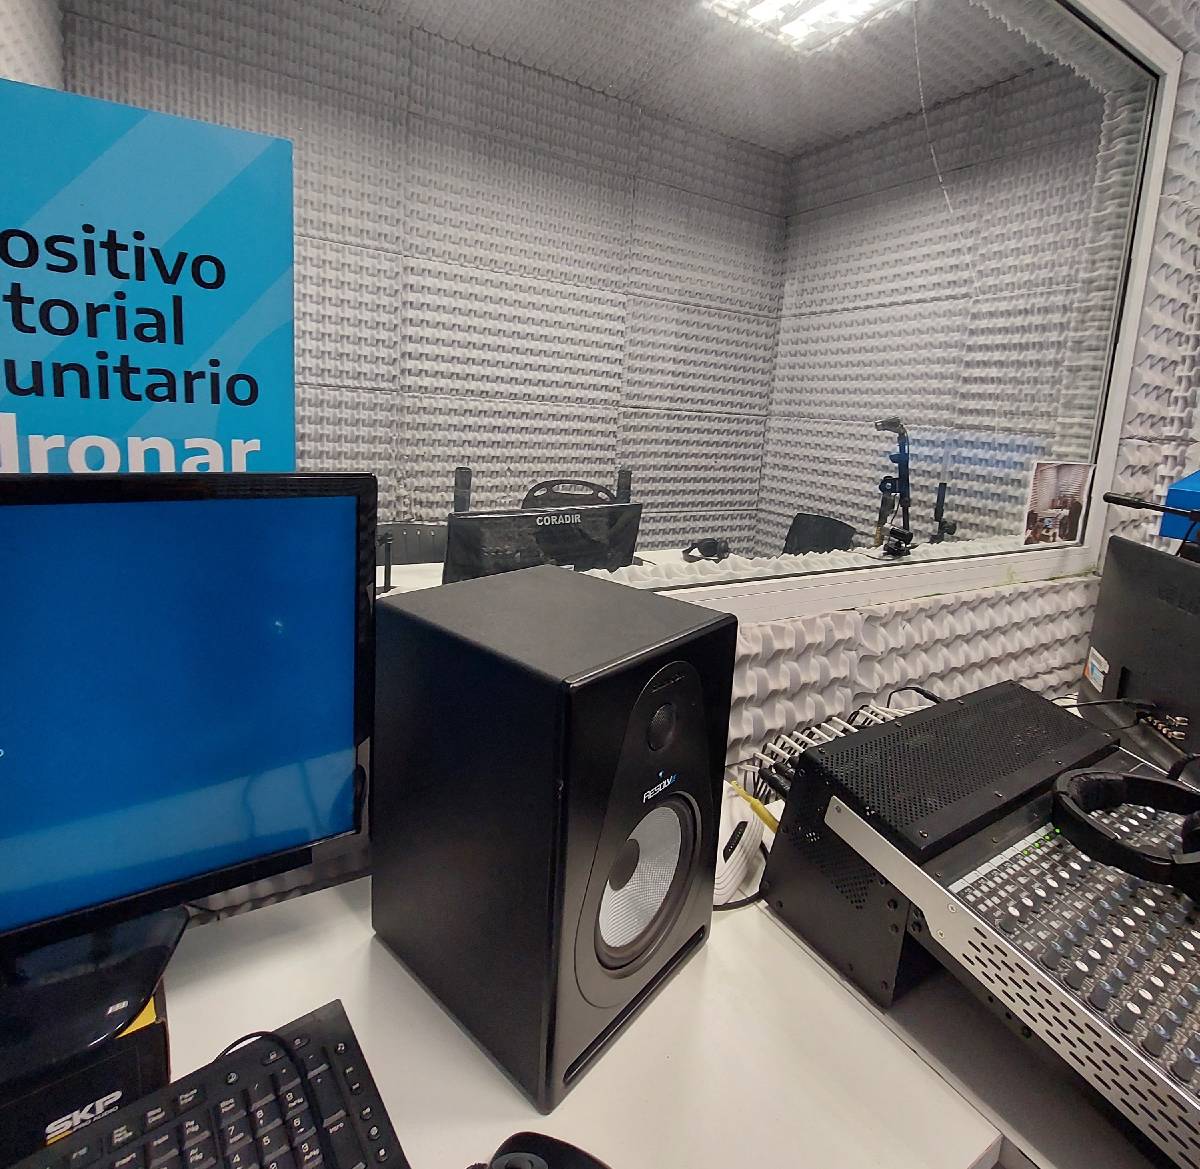 EL GIGANTE AZUL CONVOCA A INTERESADOS/AS A FORMAR PARTE DE LA RADIO